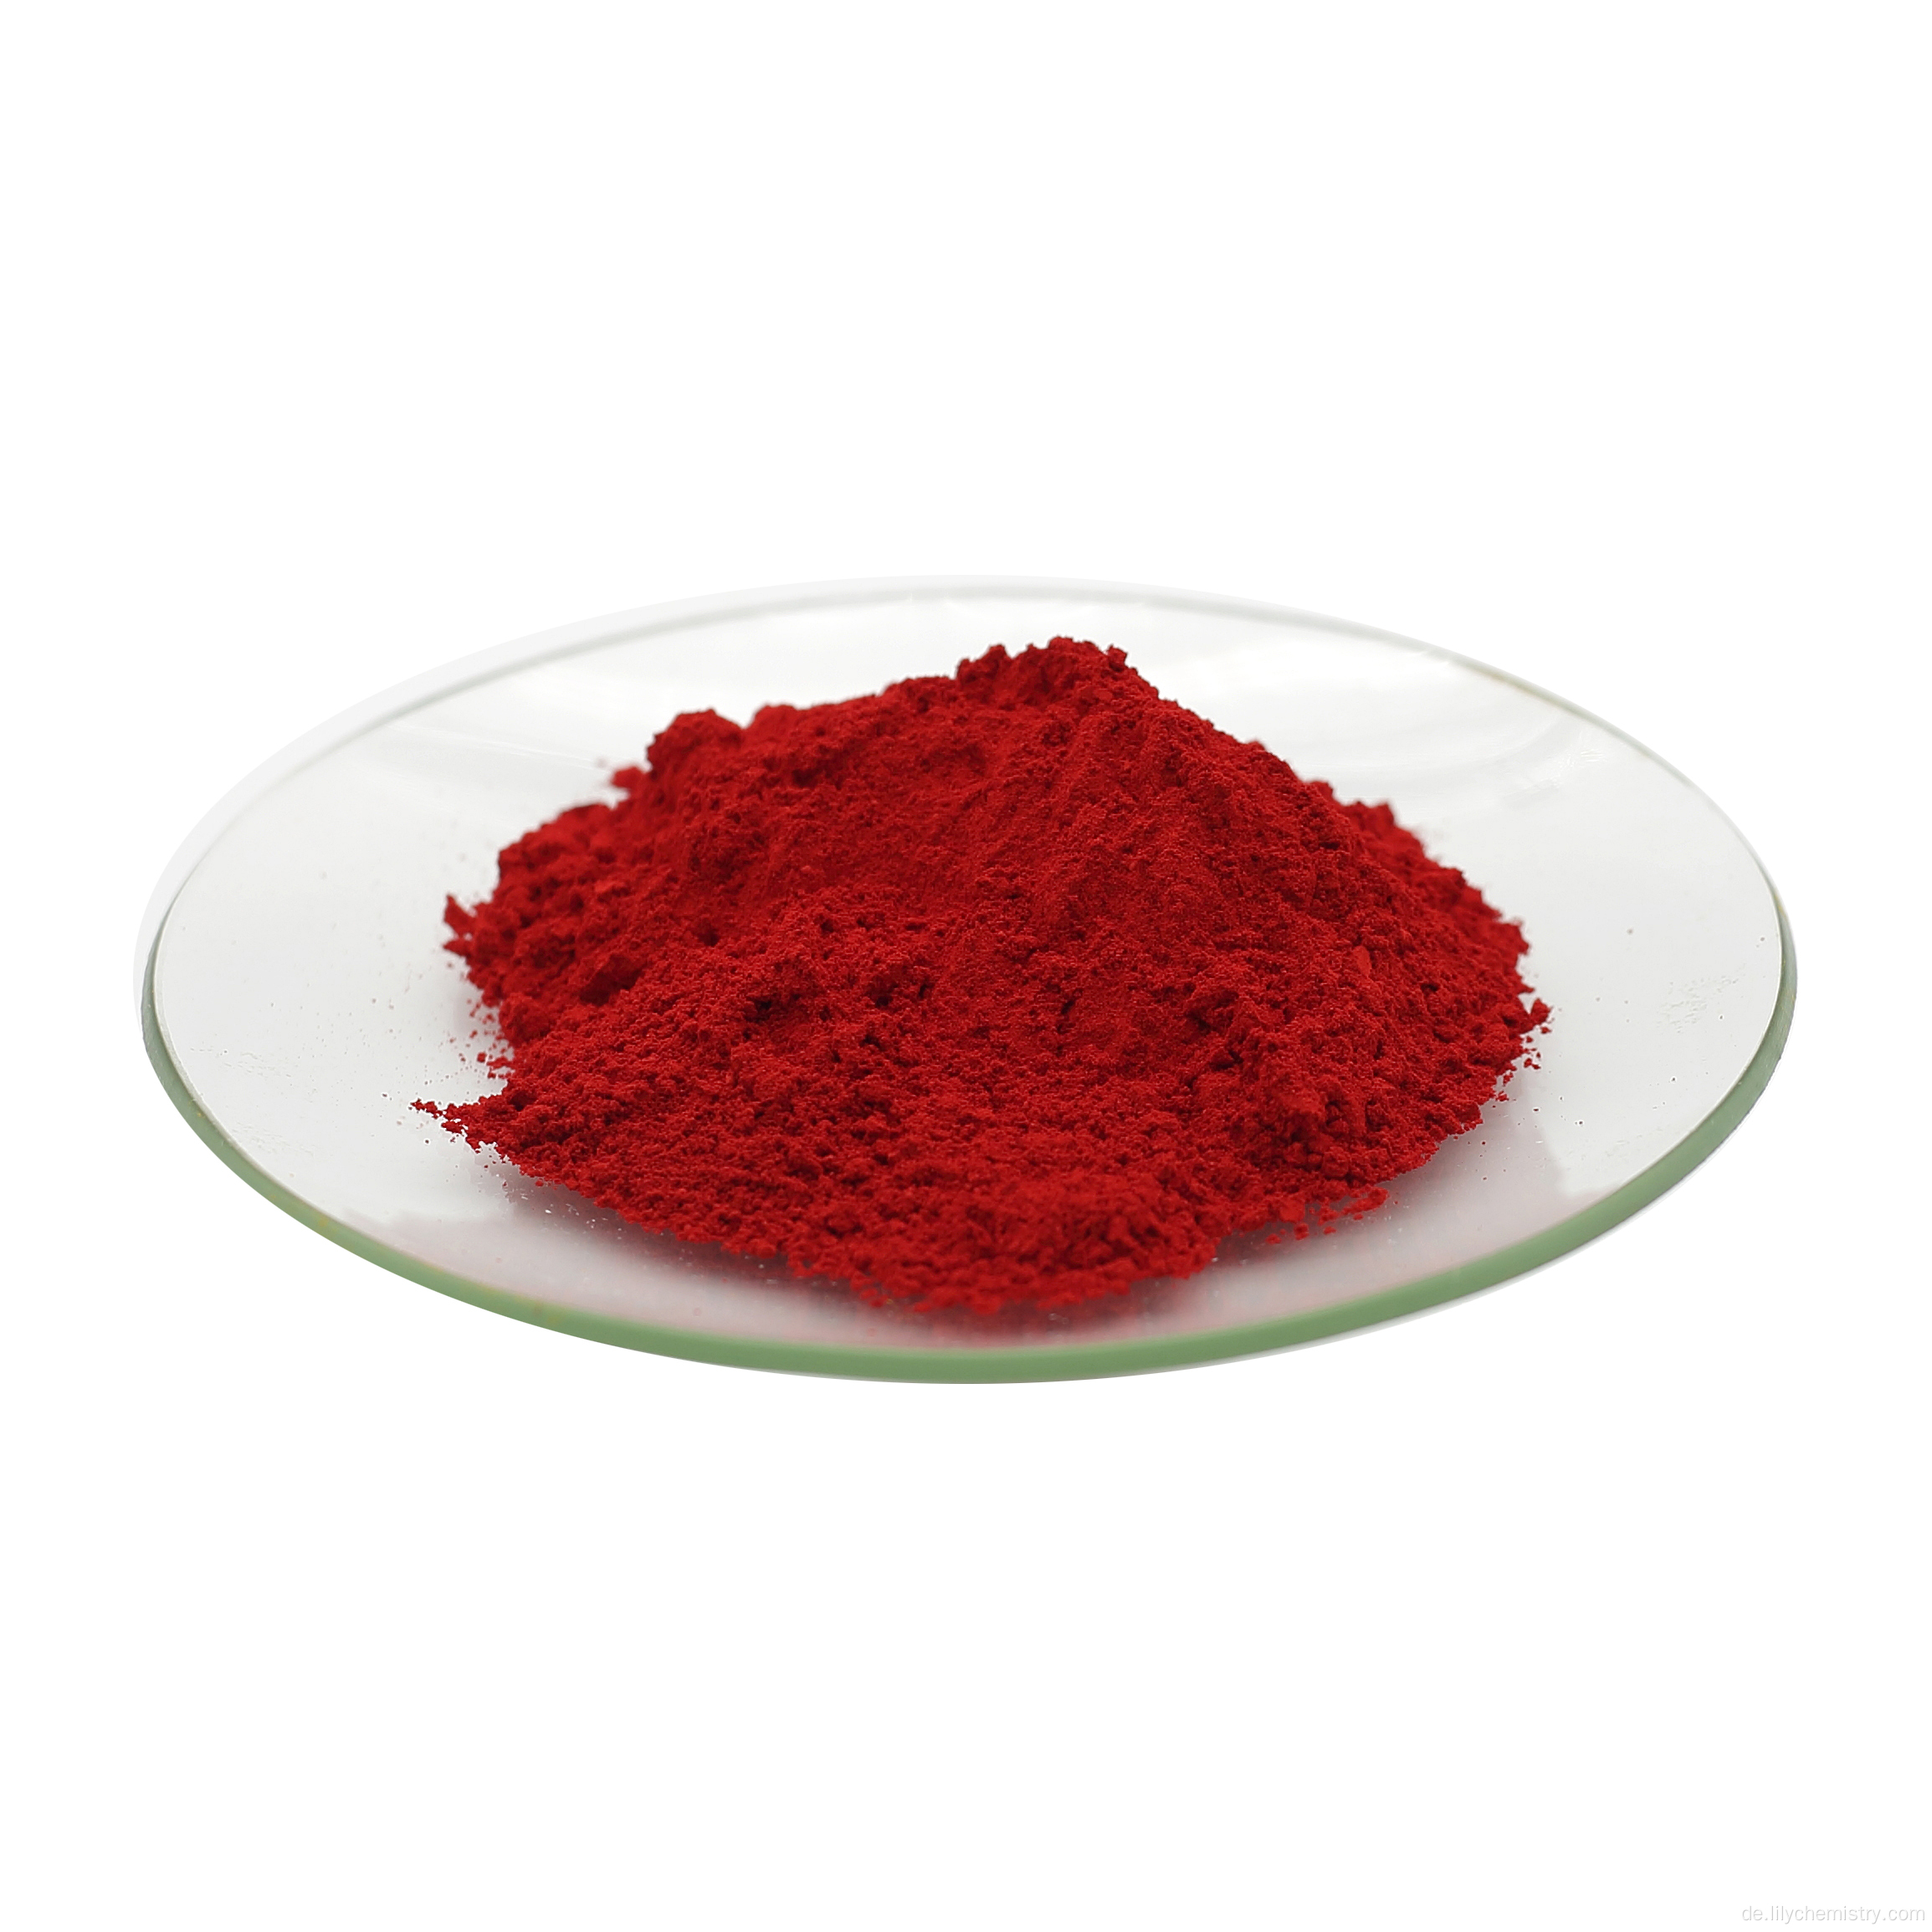 Bio -Pigment Red 3132 PR 21 für Farbe